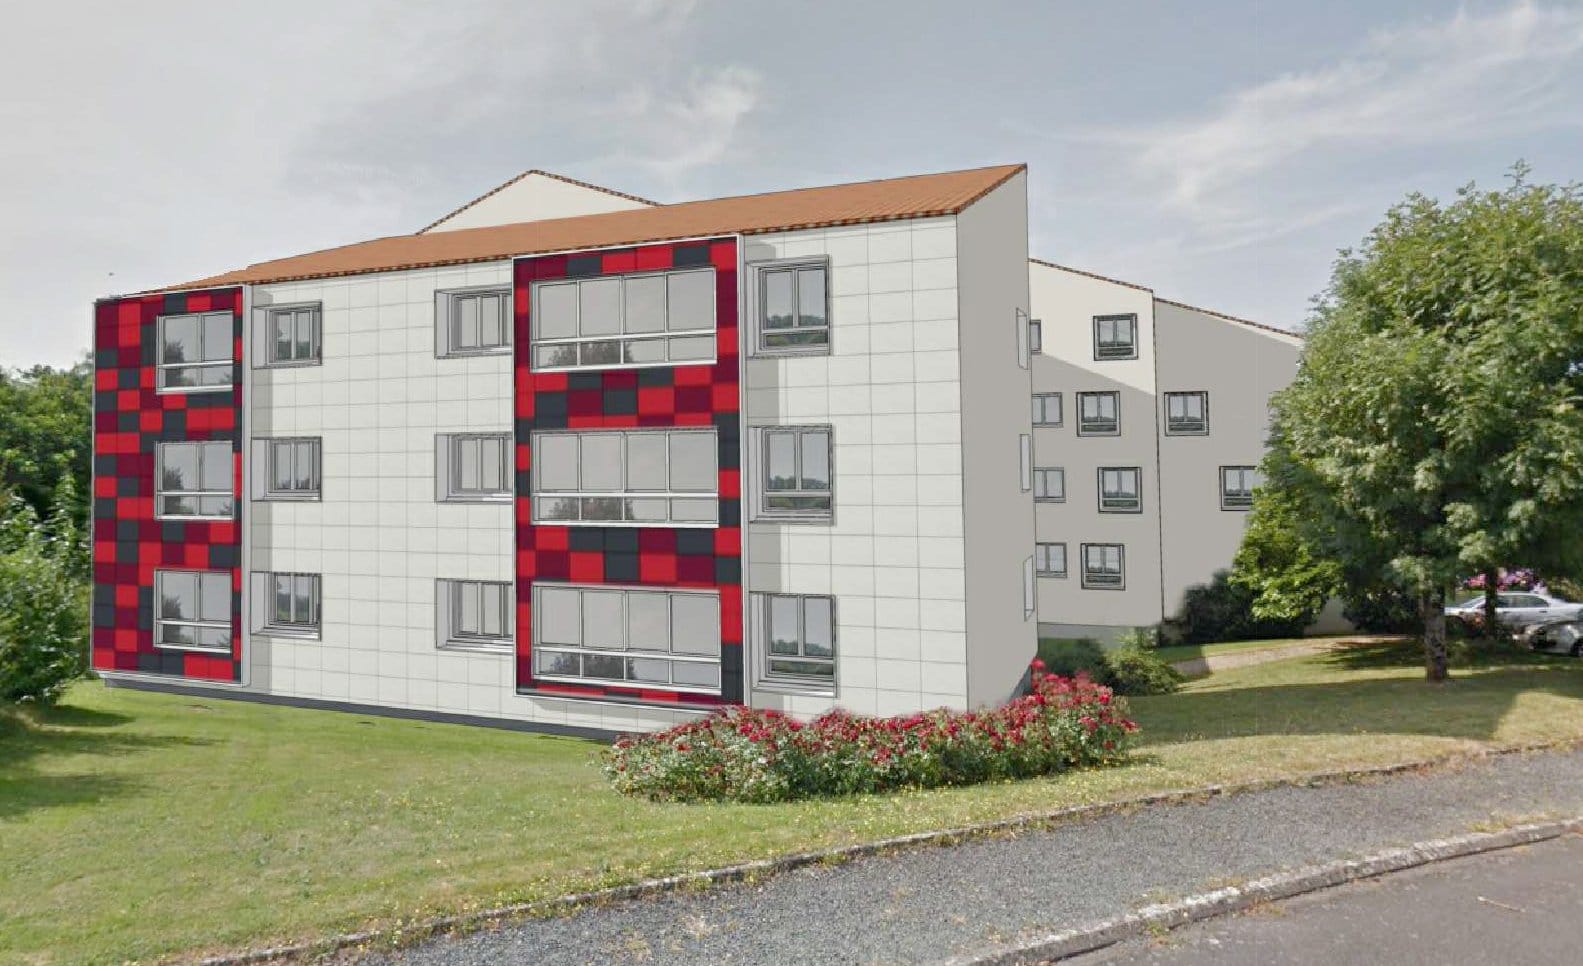 Lancement de la réhabilitation des logements à La Chataigneraie en vue d'une amélioration thermique